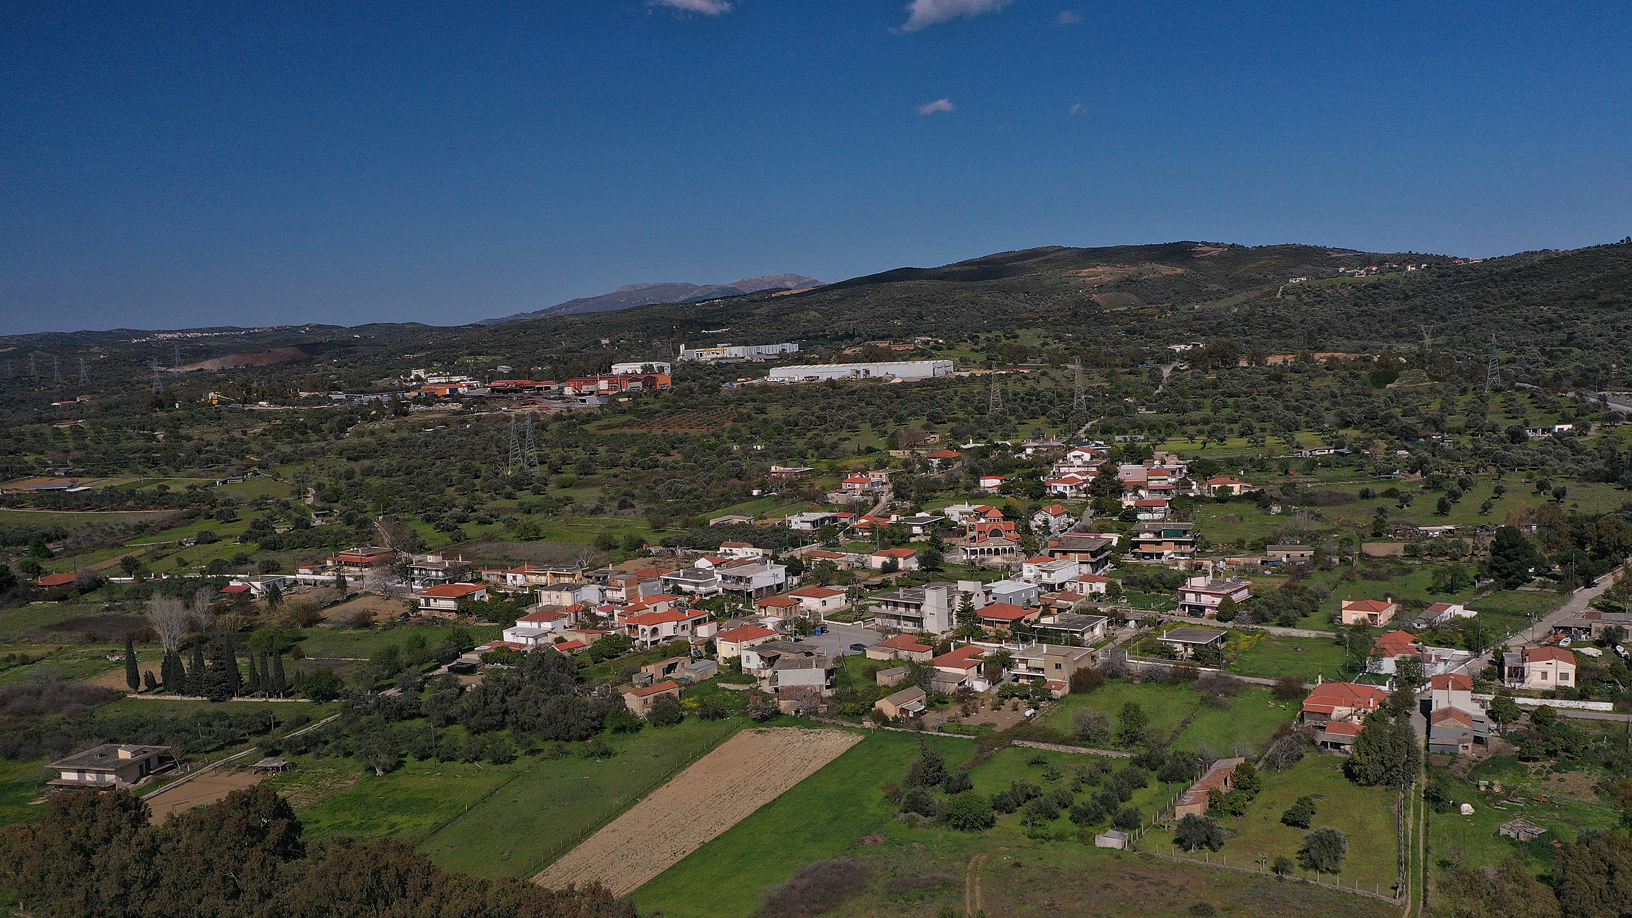 Χωριό Μηλάκι. Φωτογραφία: ©Βασίλης Συκάς, για τον Δήμο Κύμης-Αλιβερίου